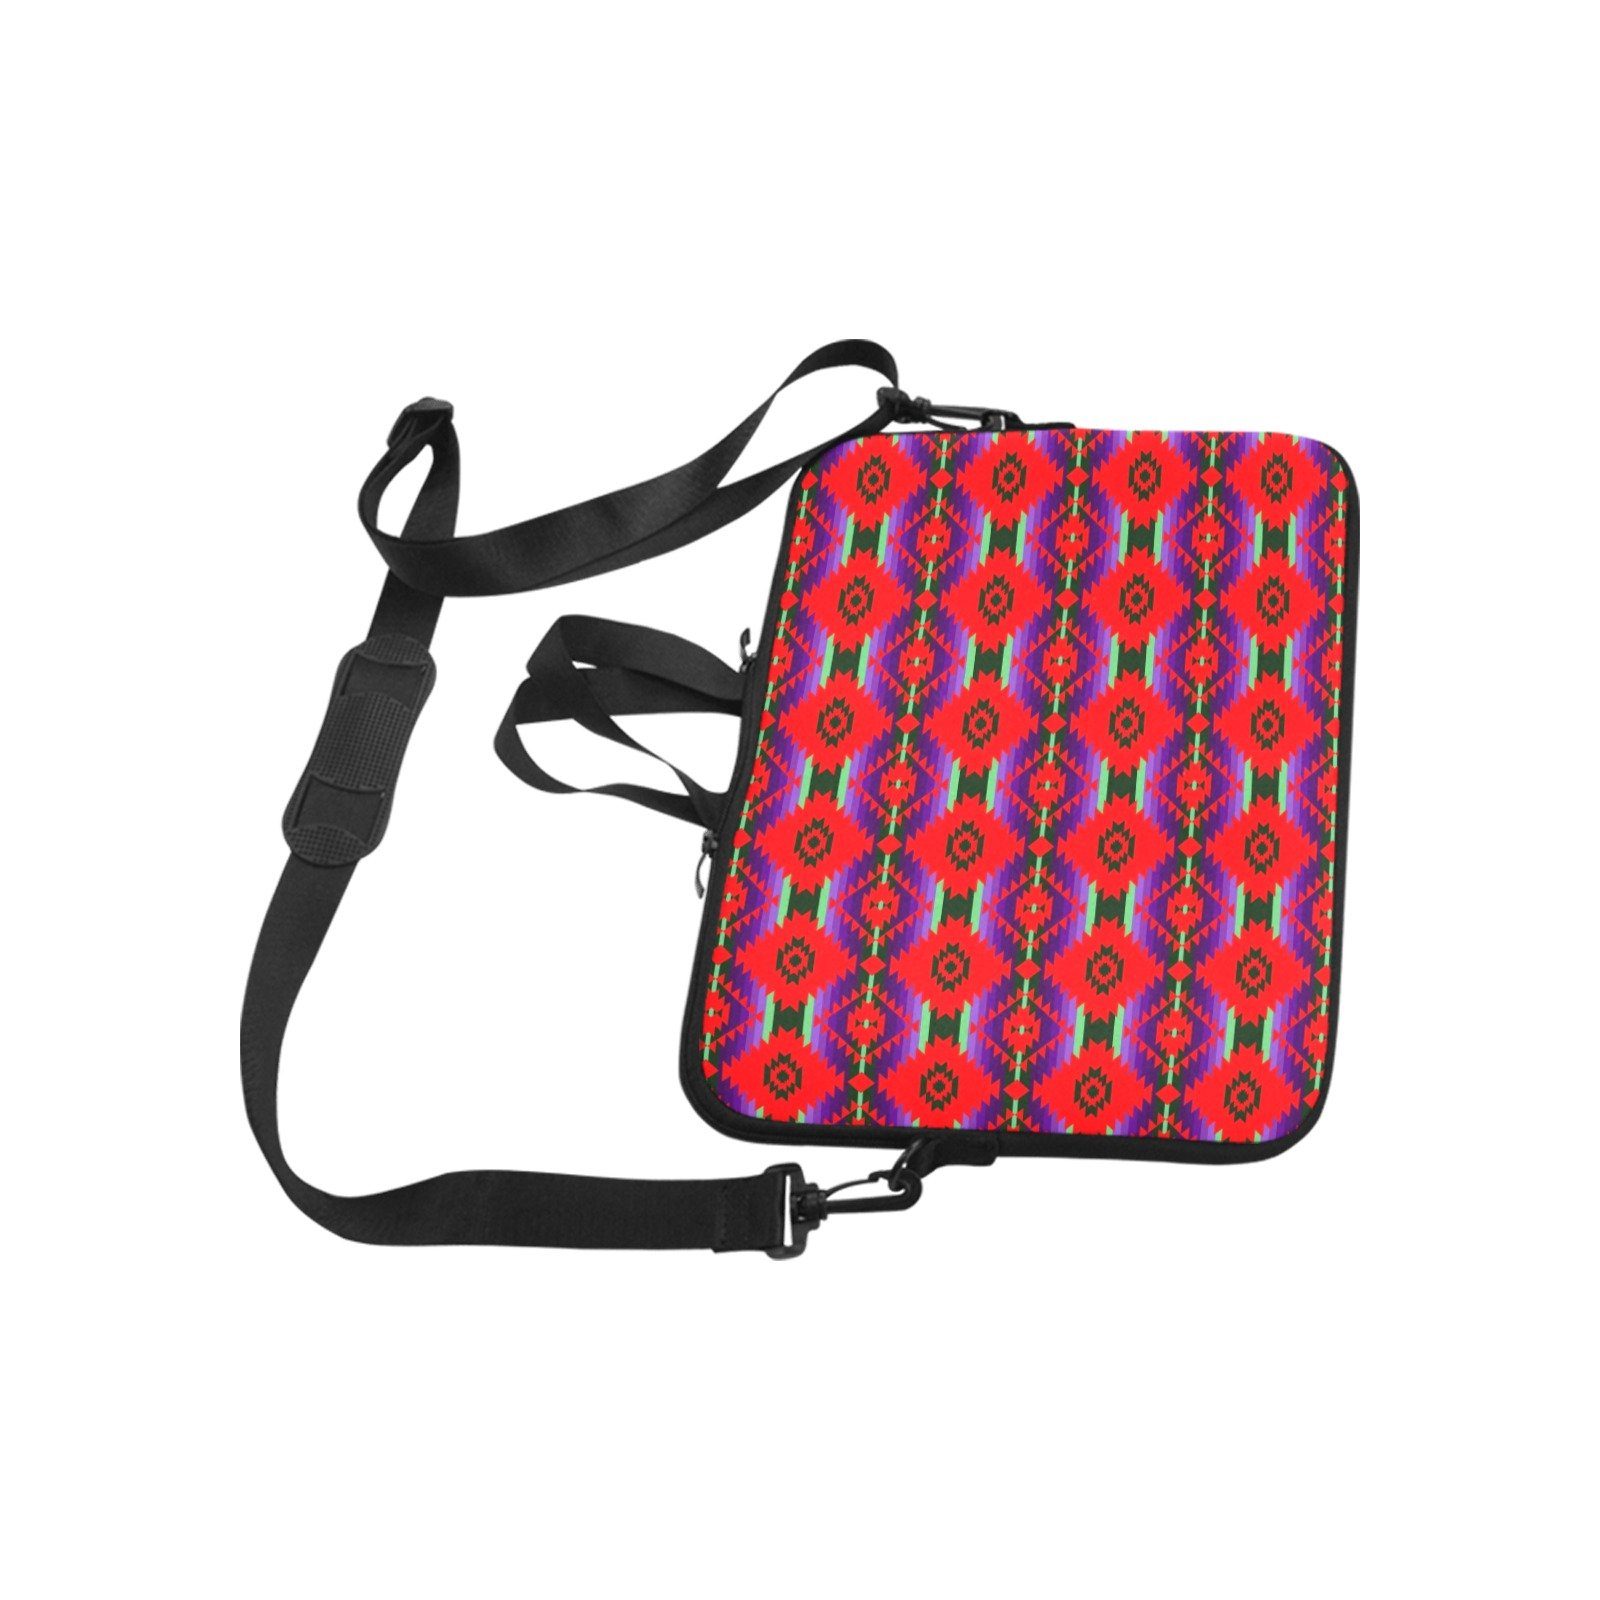 Cree Confederacy Chicken Dance Laptop Handbags 11" bag e-joyer 